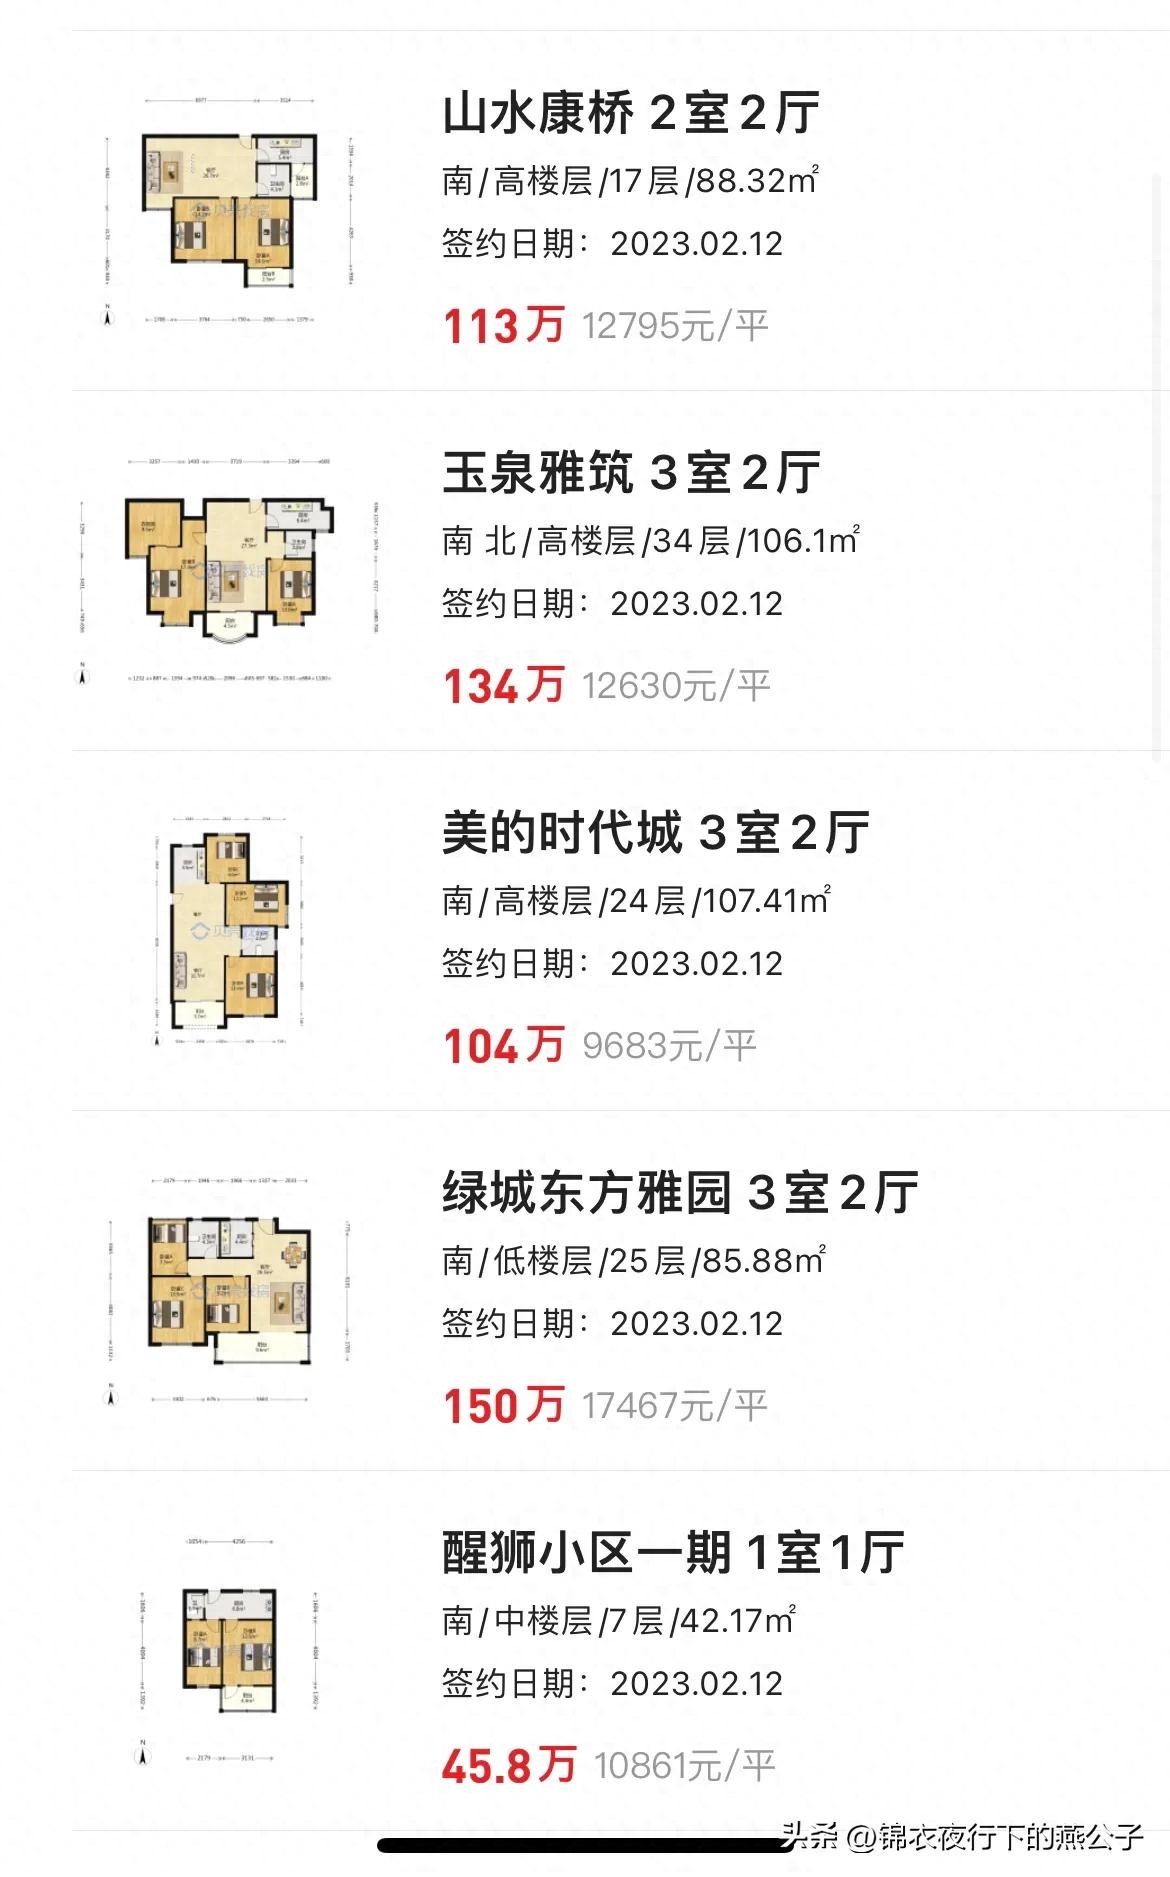 绿地世纪城二期 上海 价格_上海绿地世纪城一期二手房价格_上海绿地世纪城房价多少